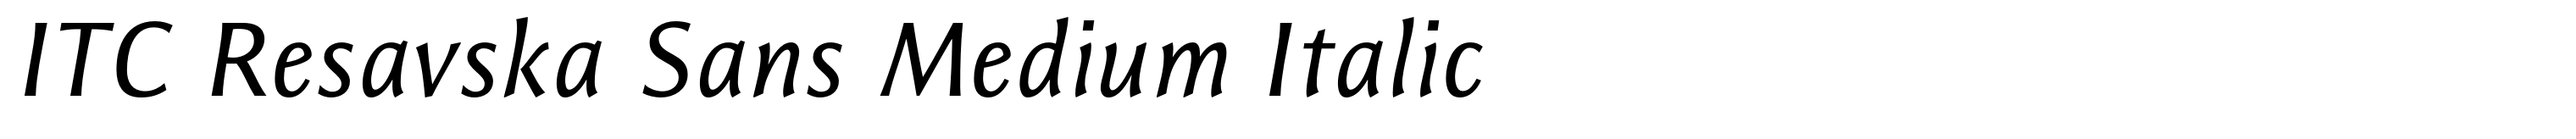 ITC Resavska Sans Medium Italic